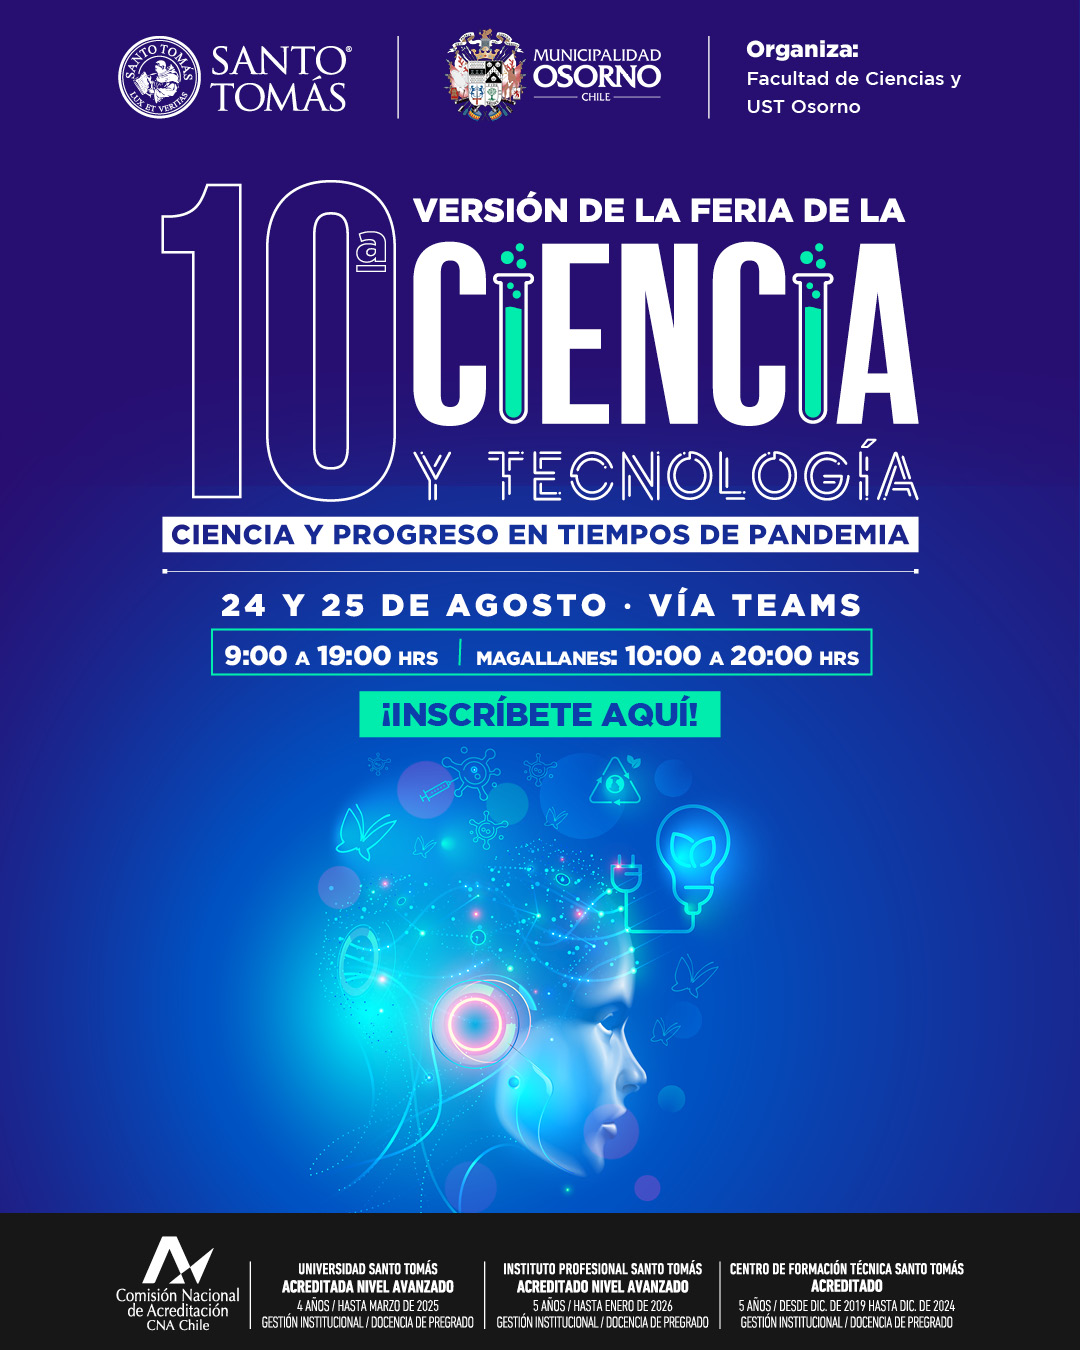 Universidad Santo Tomás Osorno invita a participar de 10° Feria de la Ciencia y Tecnología este martes 24 de agosto